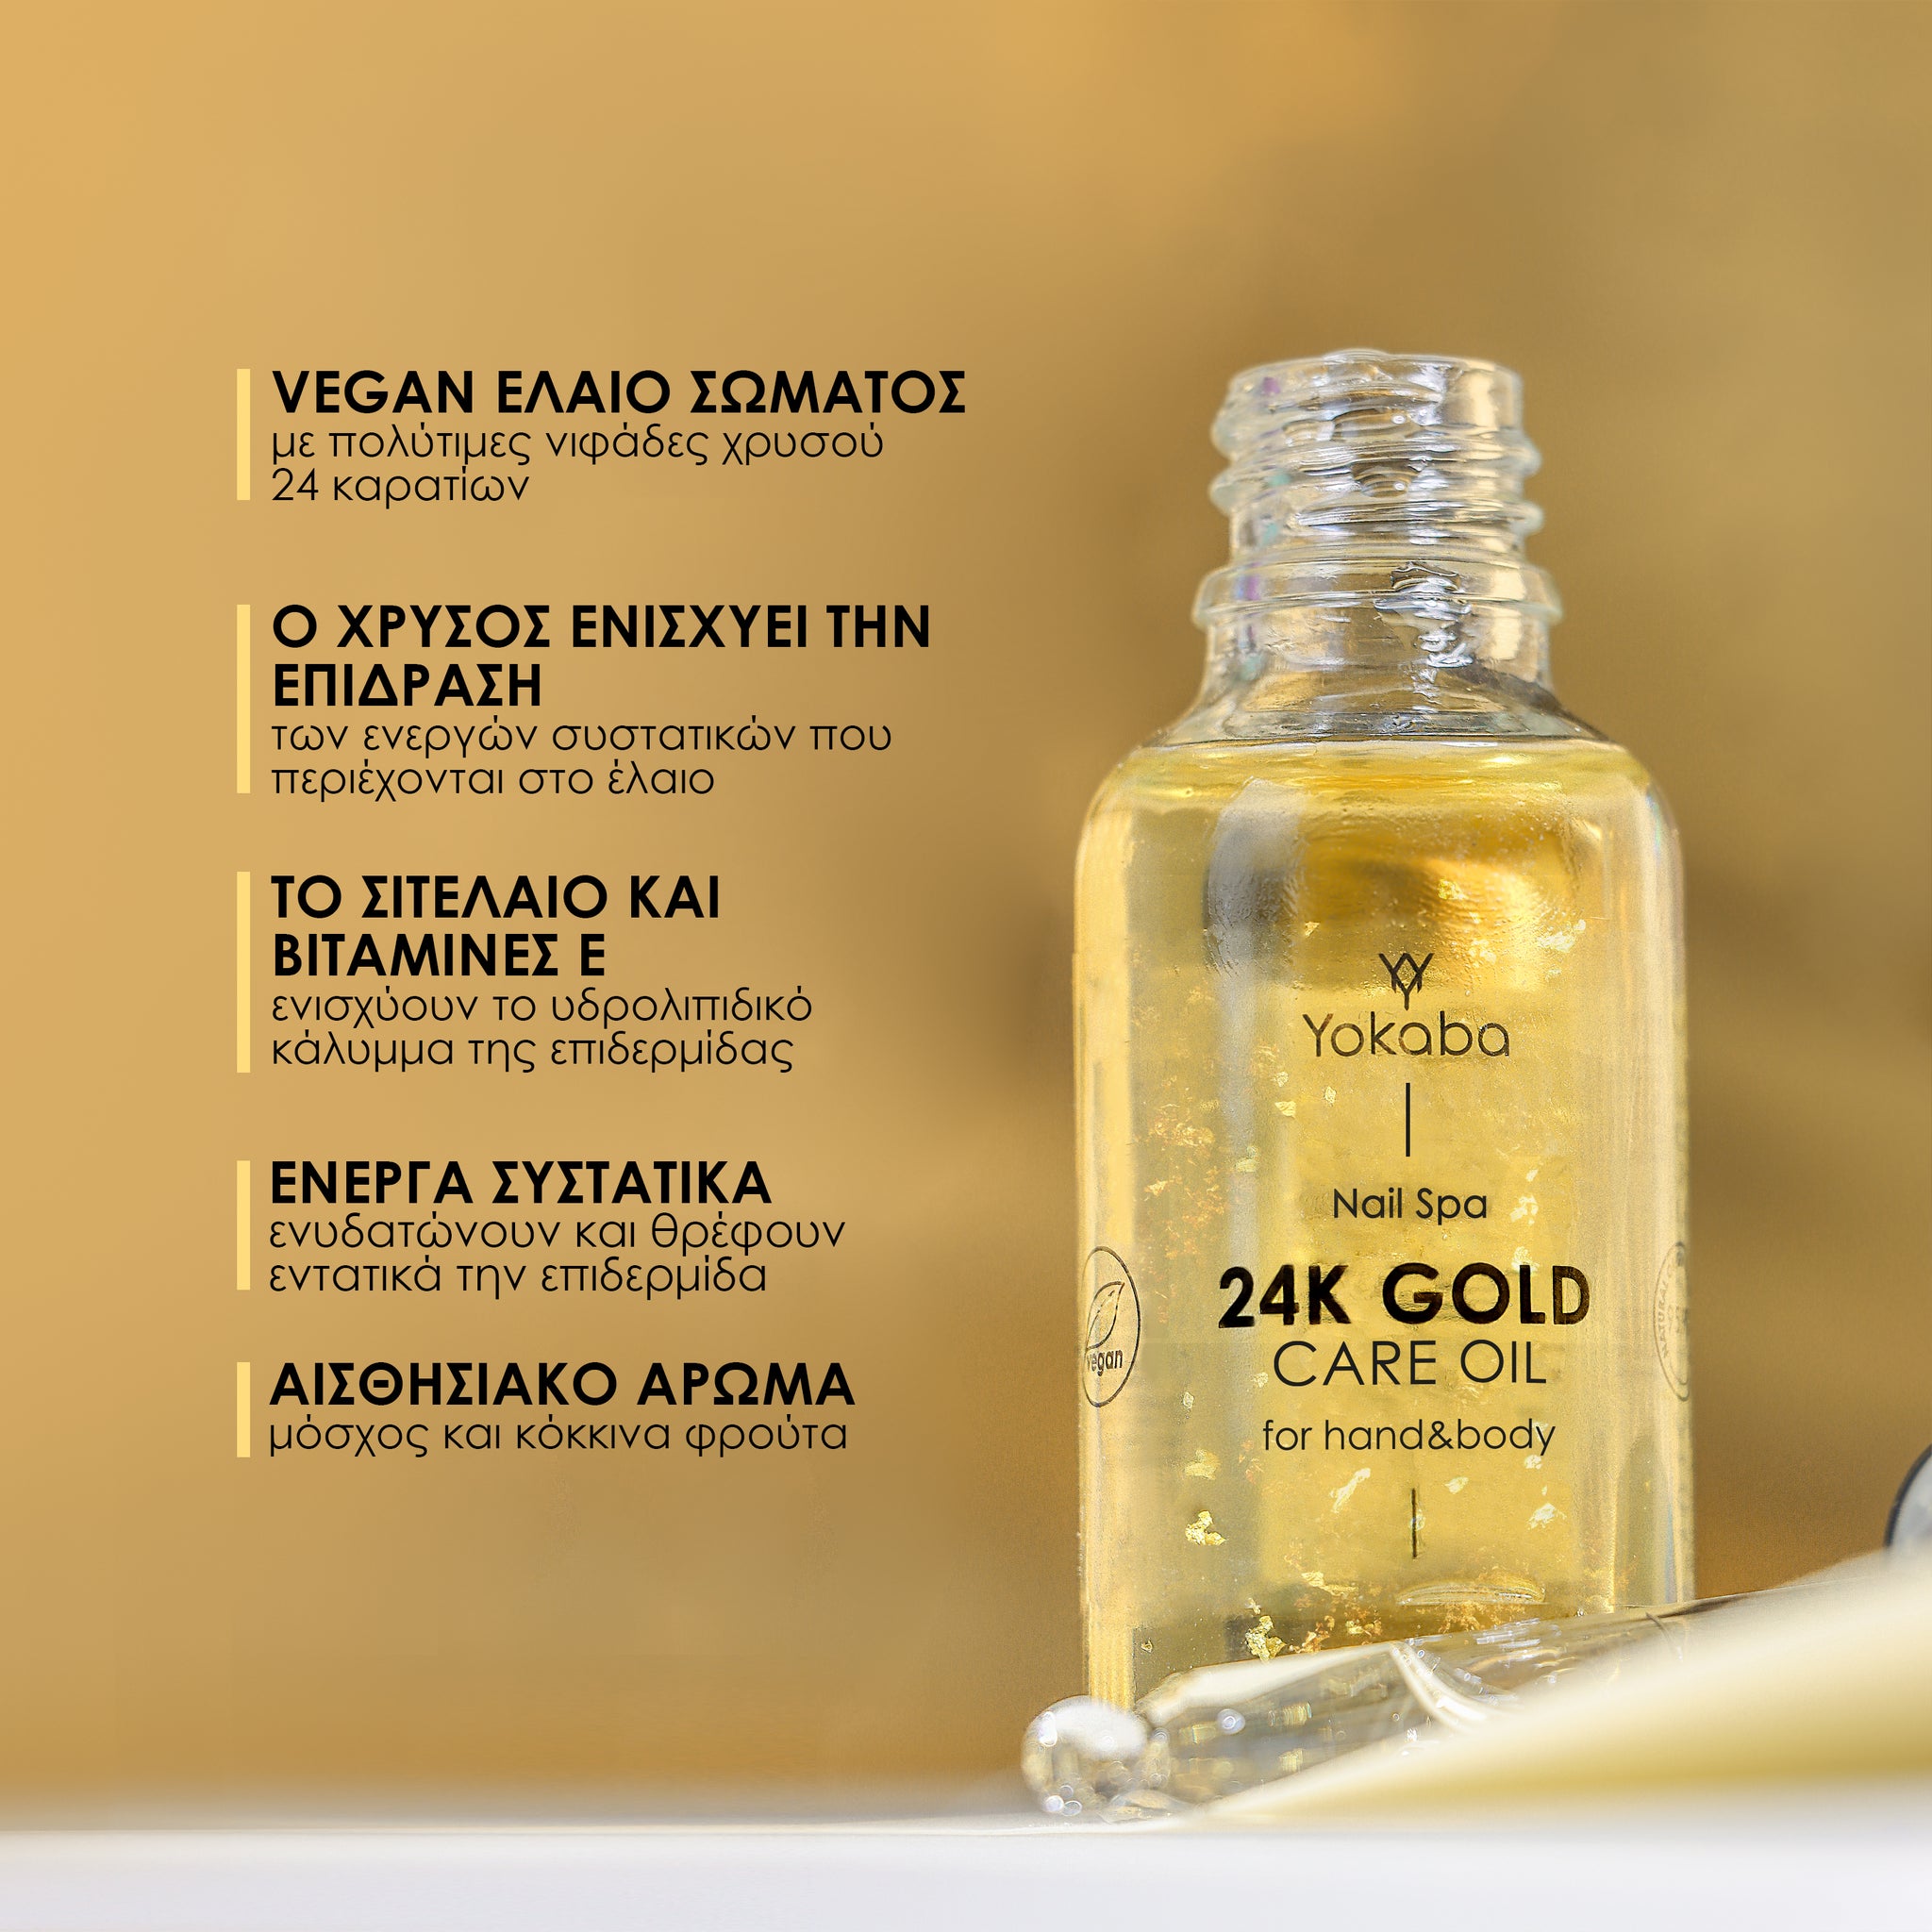 Ενυδατικός ορός προσώπου και σώματος. 24K GOLD CARE OIL 30 ml - Vegan φόρμουλα βασισμένη σε 95,9% συστατικά φυσικής προέλευσης